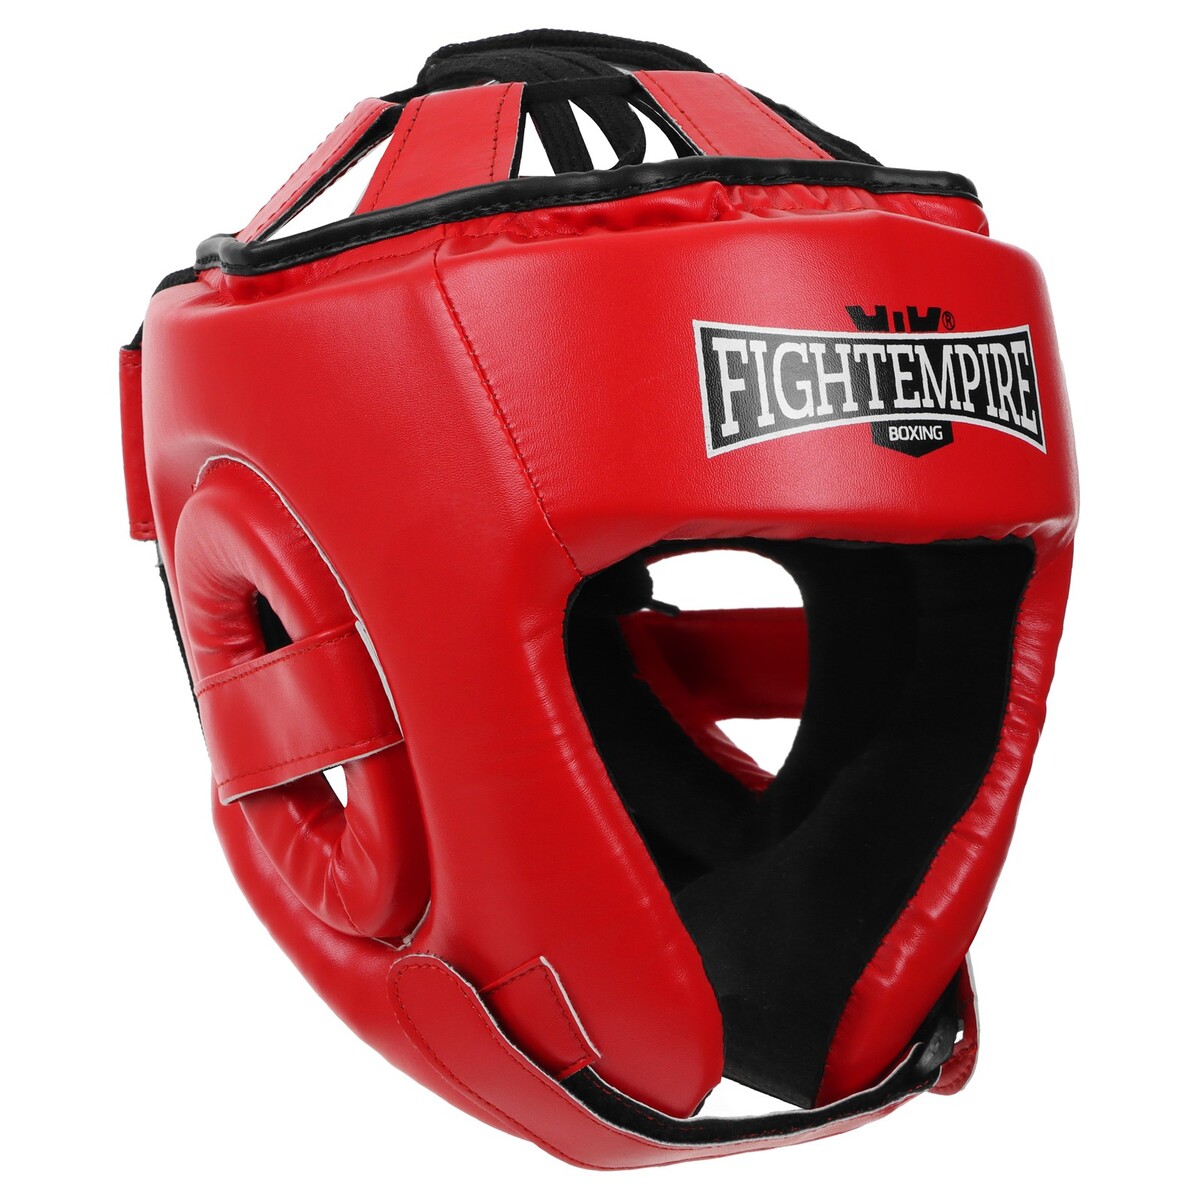 Шлем боксерский fight empire, amateur, р. s, цвет красный шлем для единоборств adidas kick boxing headguard adikbhg500 красный